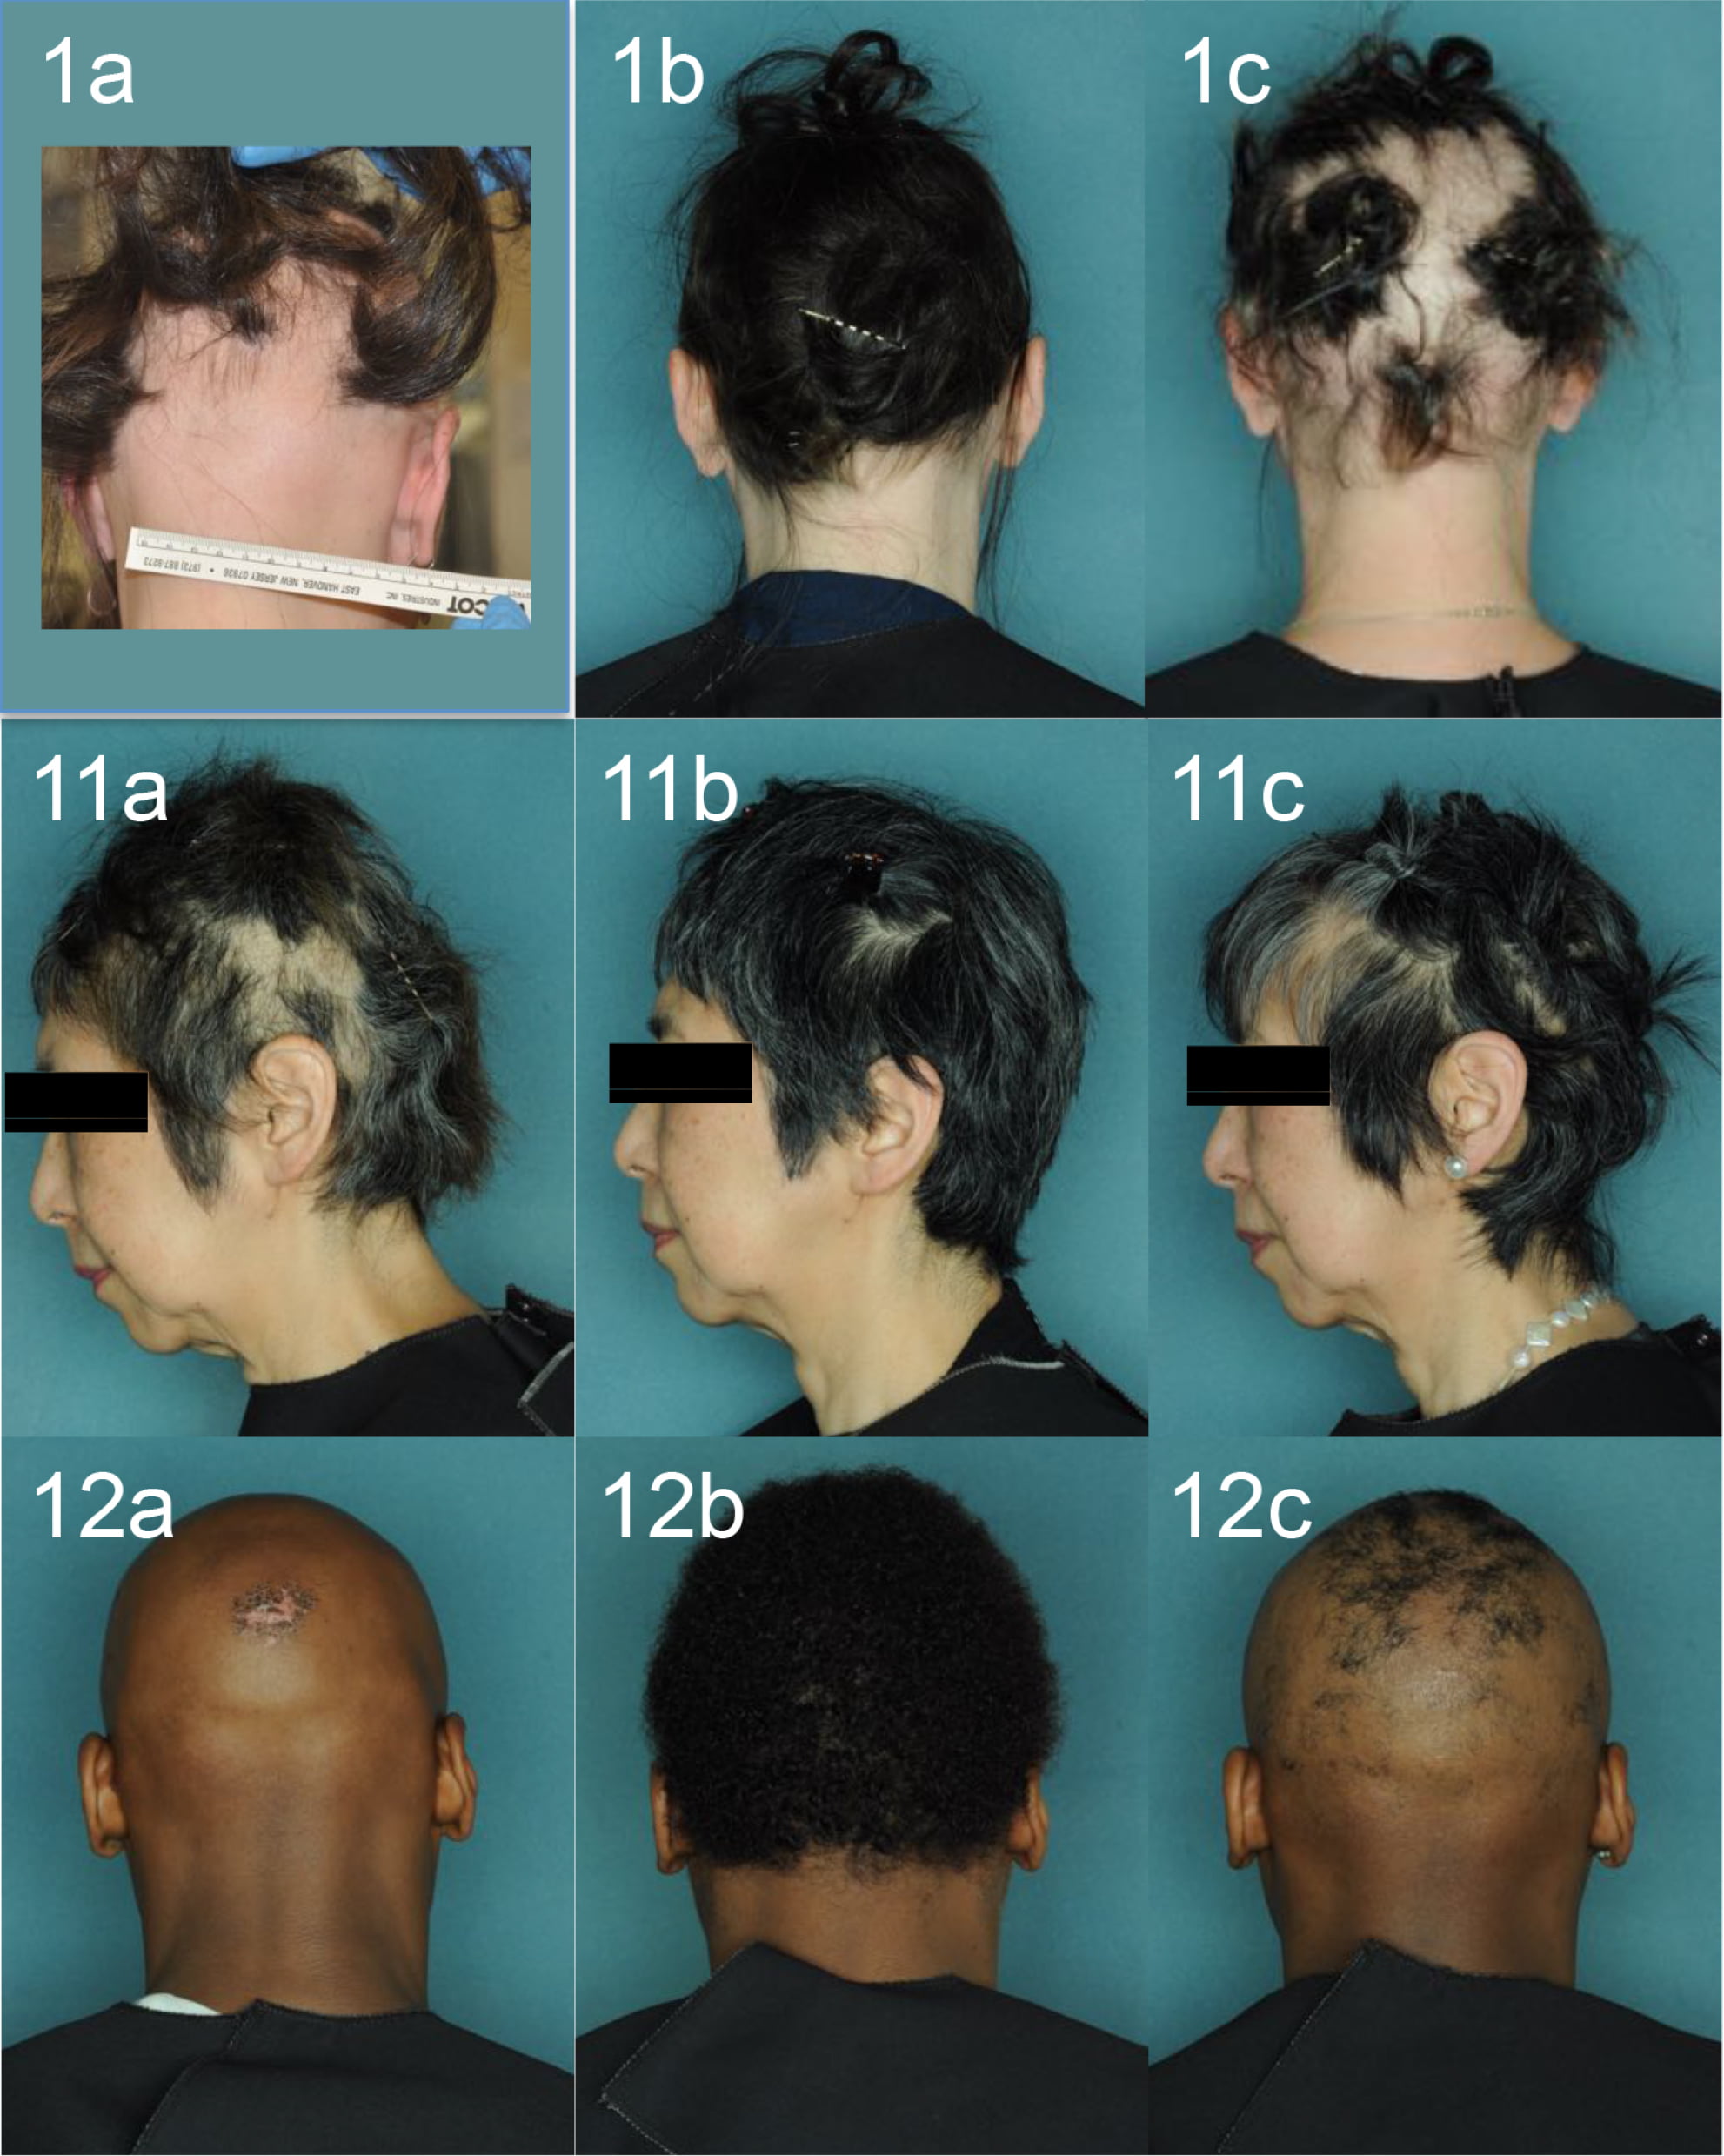 ruxolitinib alopecia areata results 02 - Alopecia Areata Treatment: What Future Holds